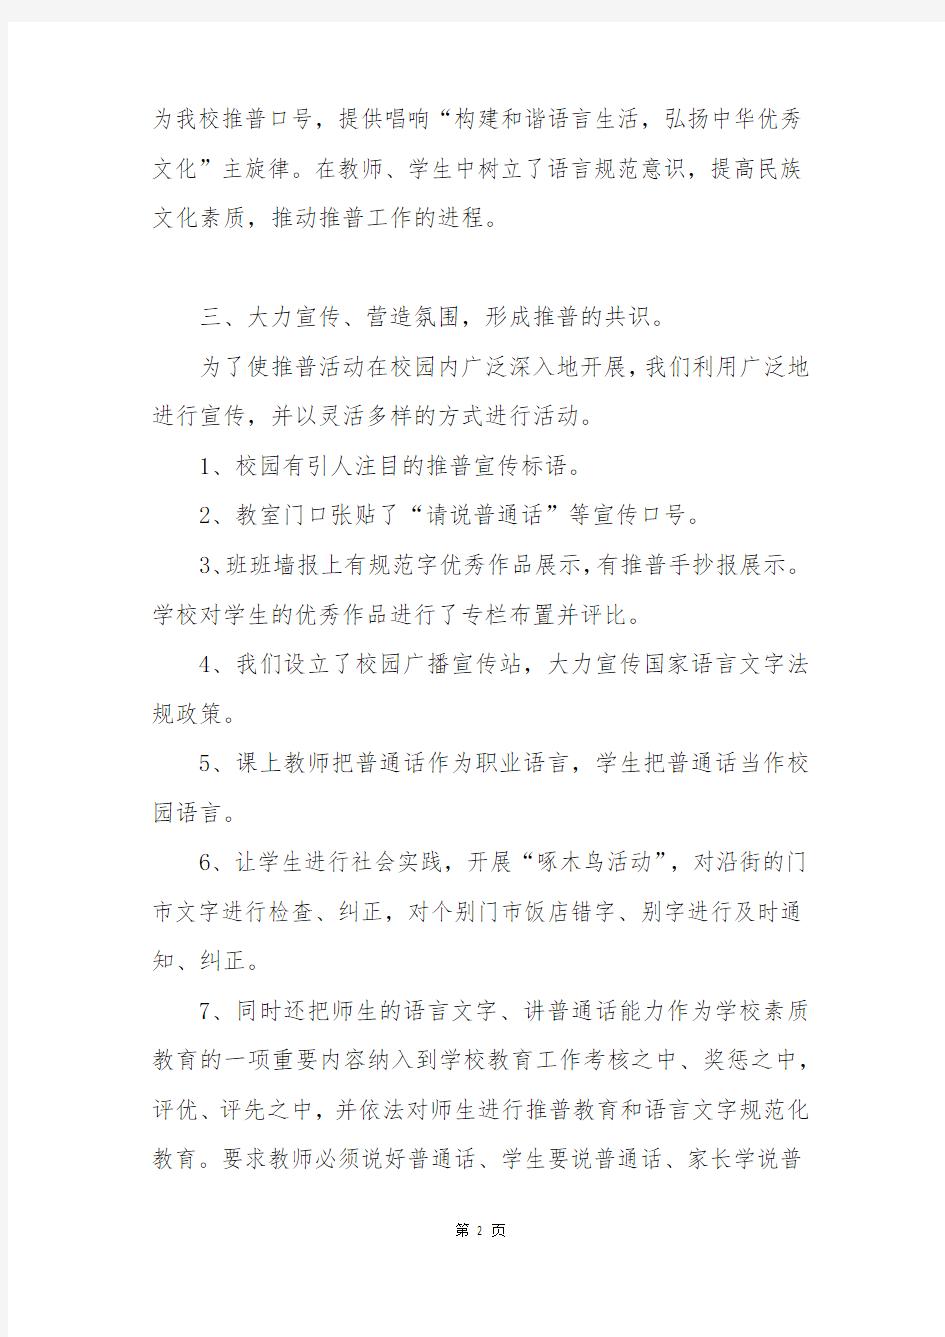 推广普通话和规范使用汉字总结